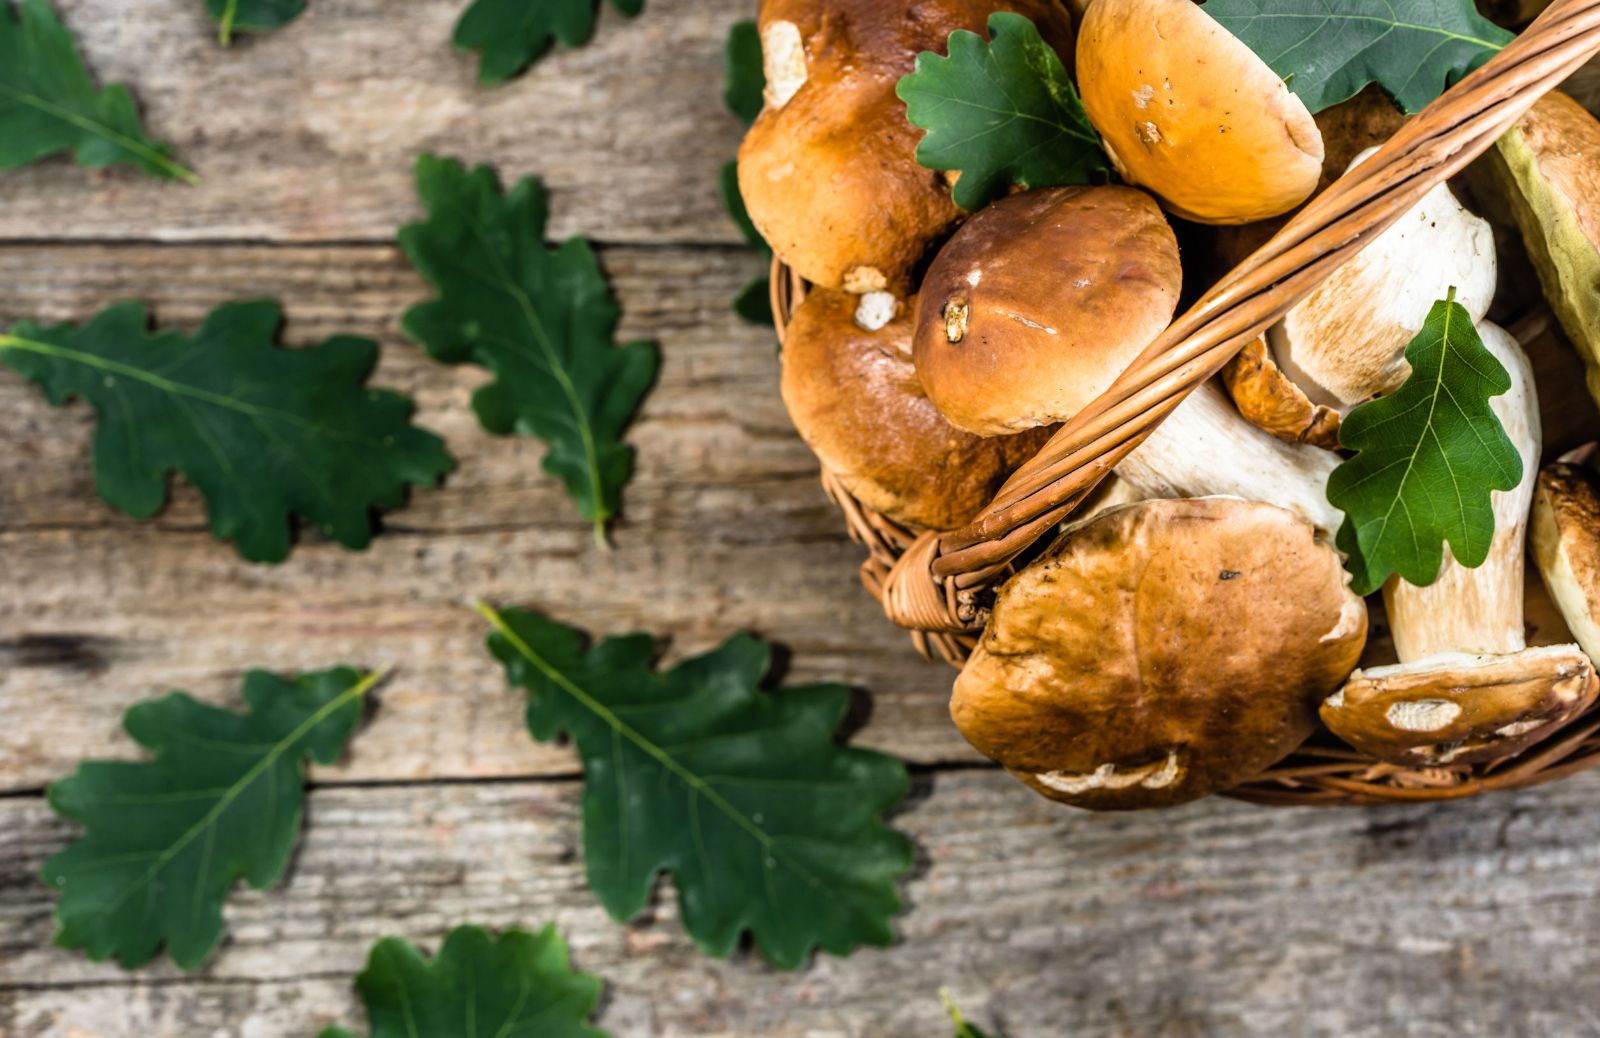 Ricette con i funghi porcini: 5 primi piatti che vi faranno leccare i baffi!